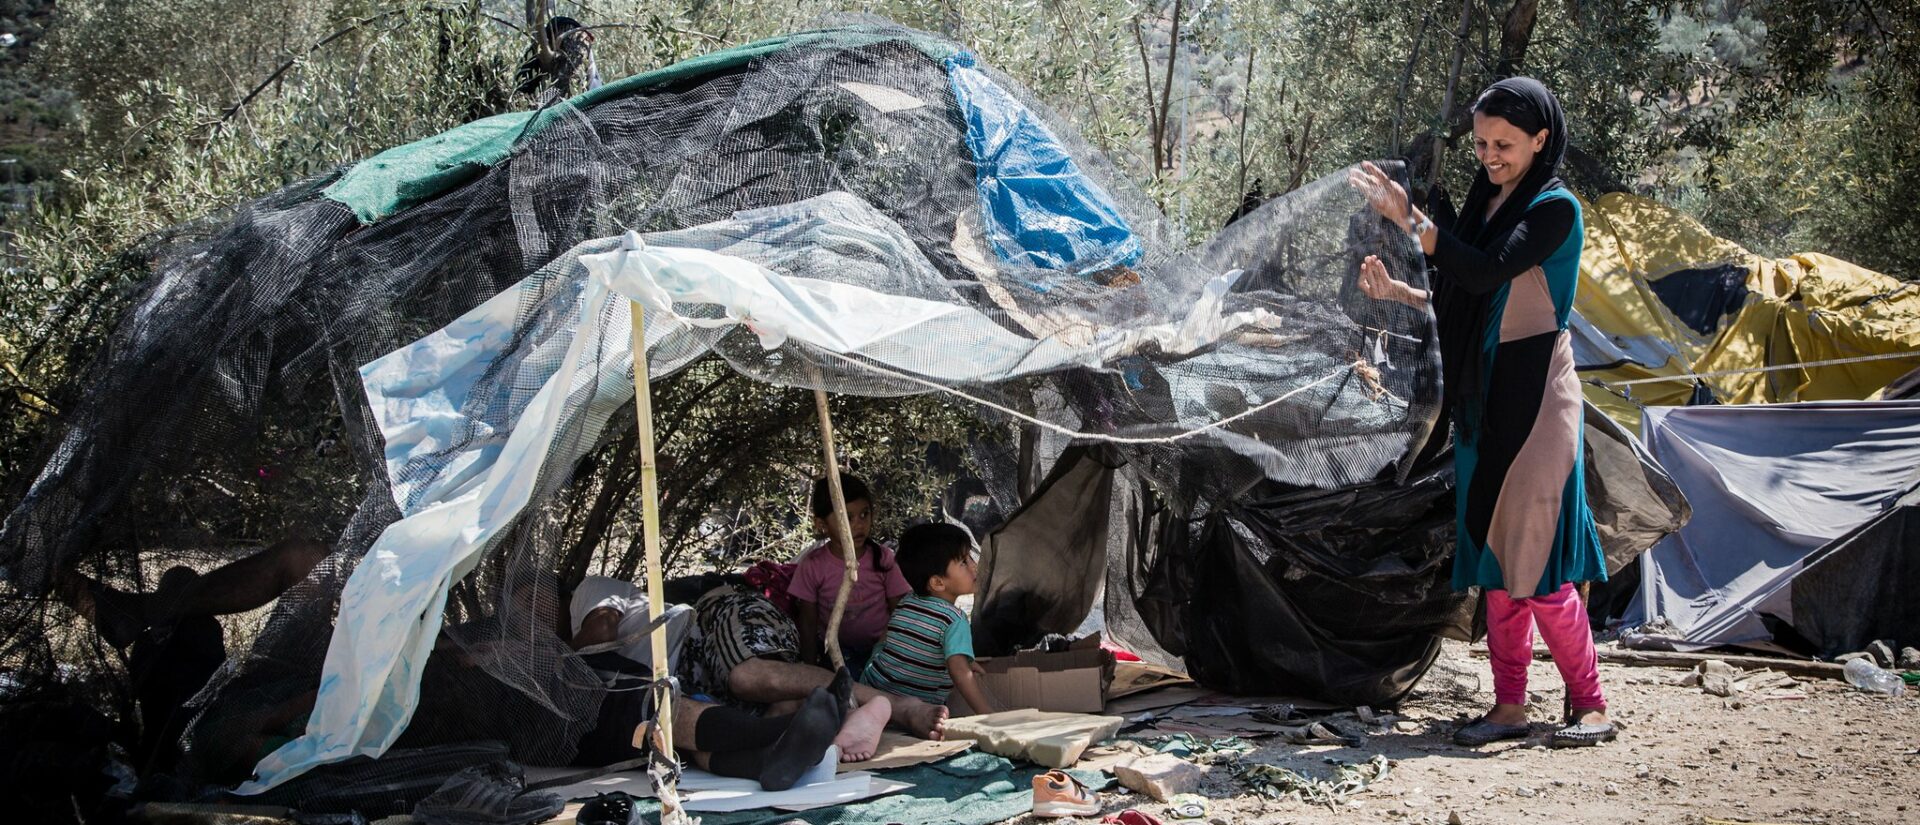 Les réfugiés de Lesbos vivent dans des conditions très précaires | © Croix-Rouge/Flickr/CC BY-NC-ND 2.0